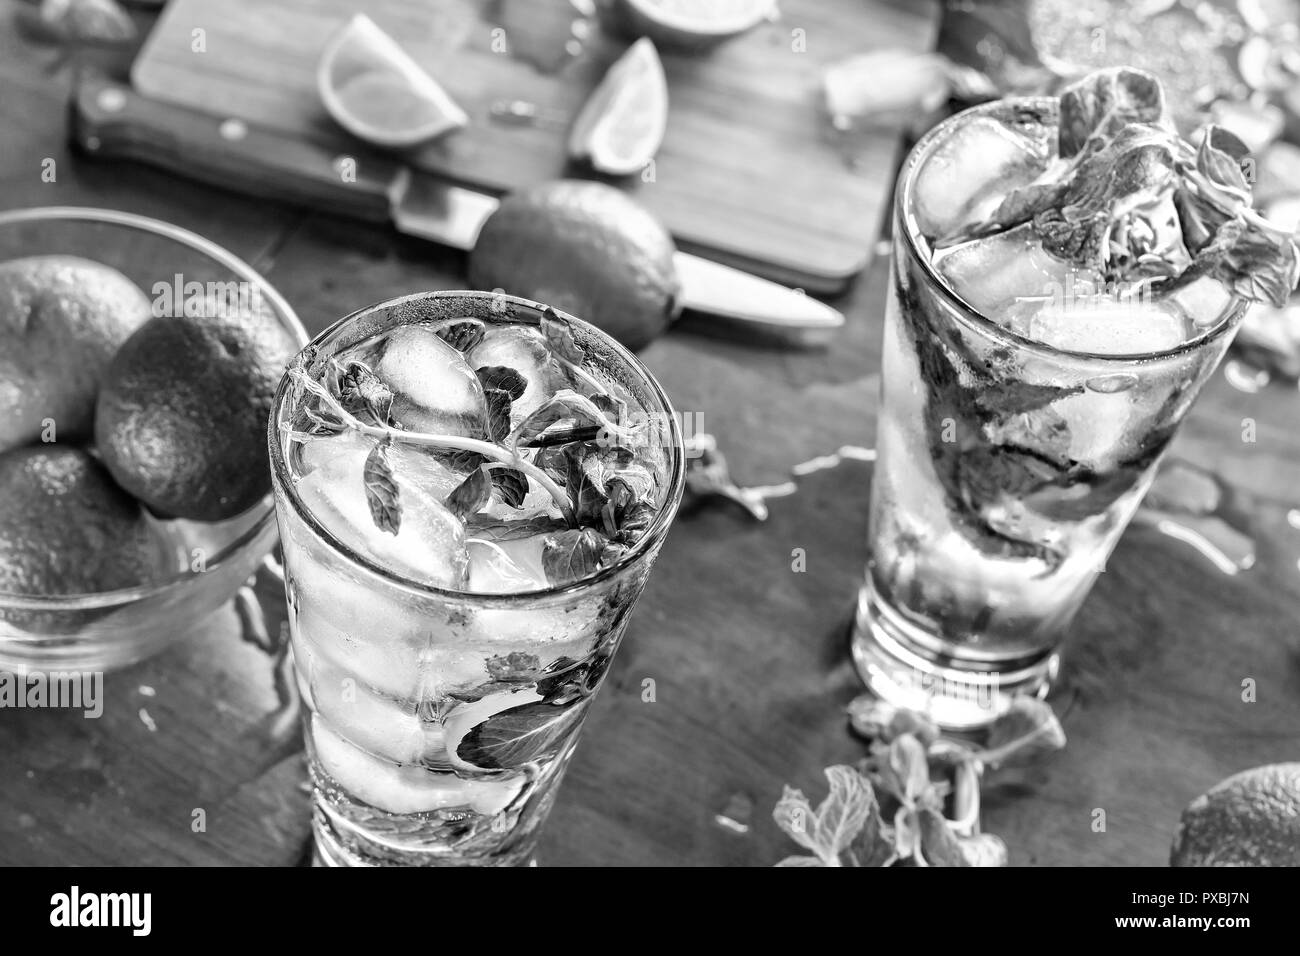 Foto in bianco e nero, Caipirinha, mojito, cocktail alcoolico cool Foto Stock